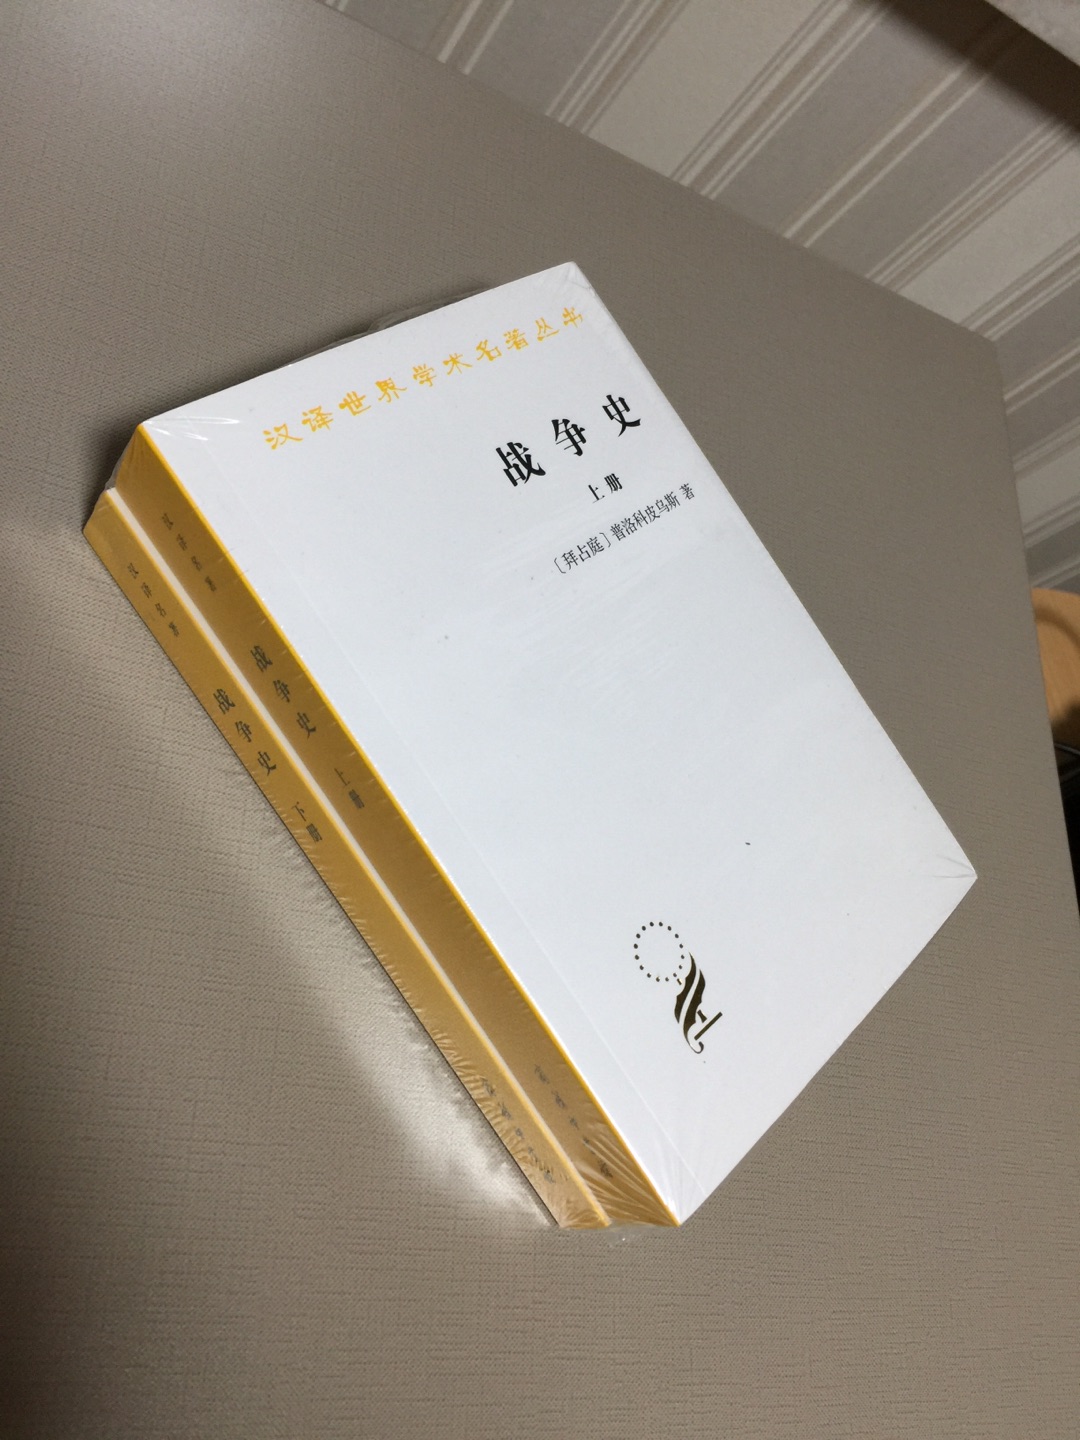 超爱商务印书馆的汉译世界学术名著丛书这个系列，家里最多的藏书就是商务印书馆的了。内容自不必说，装帧设计也是学术气息浓浓，简洁大方。